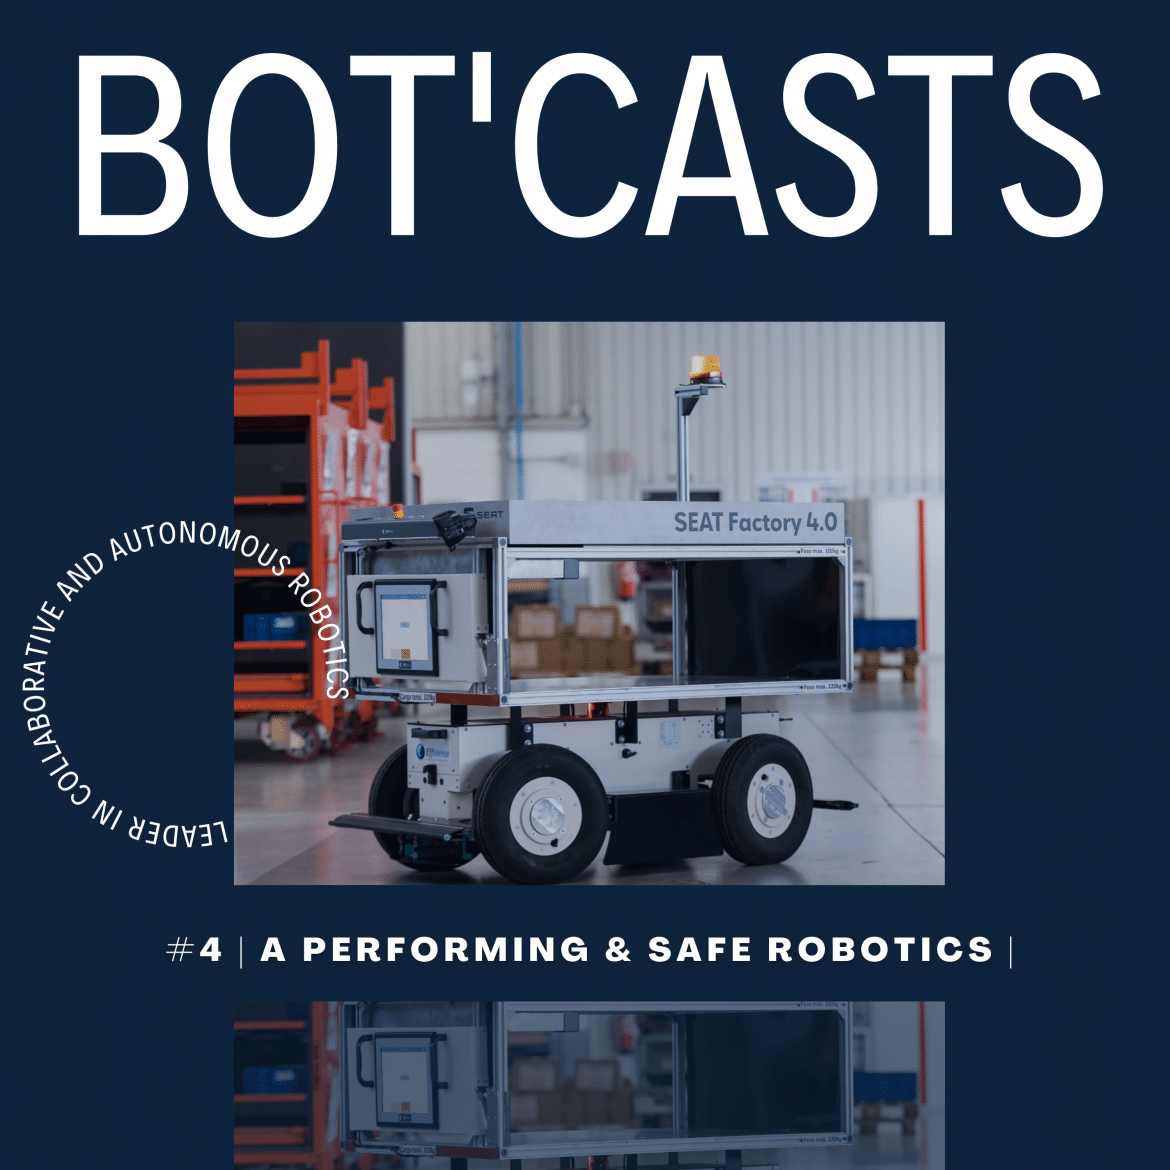 #4 - Bot-casts | A performing & safe robotics